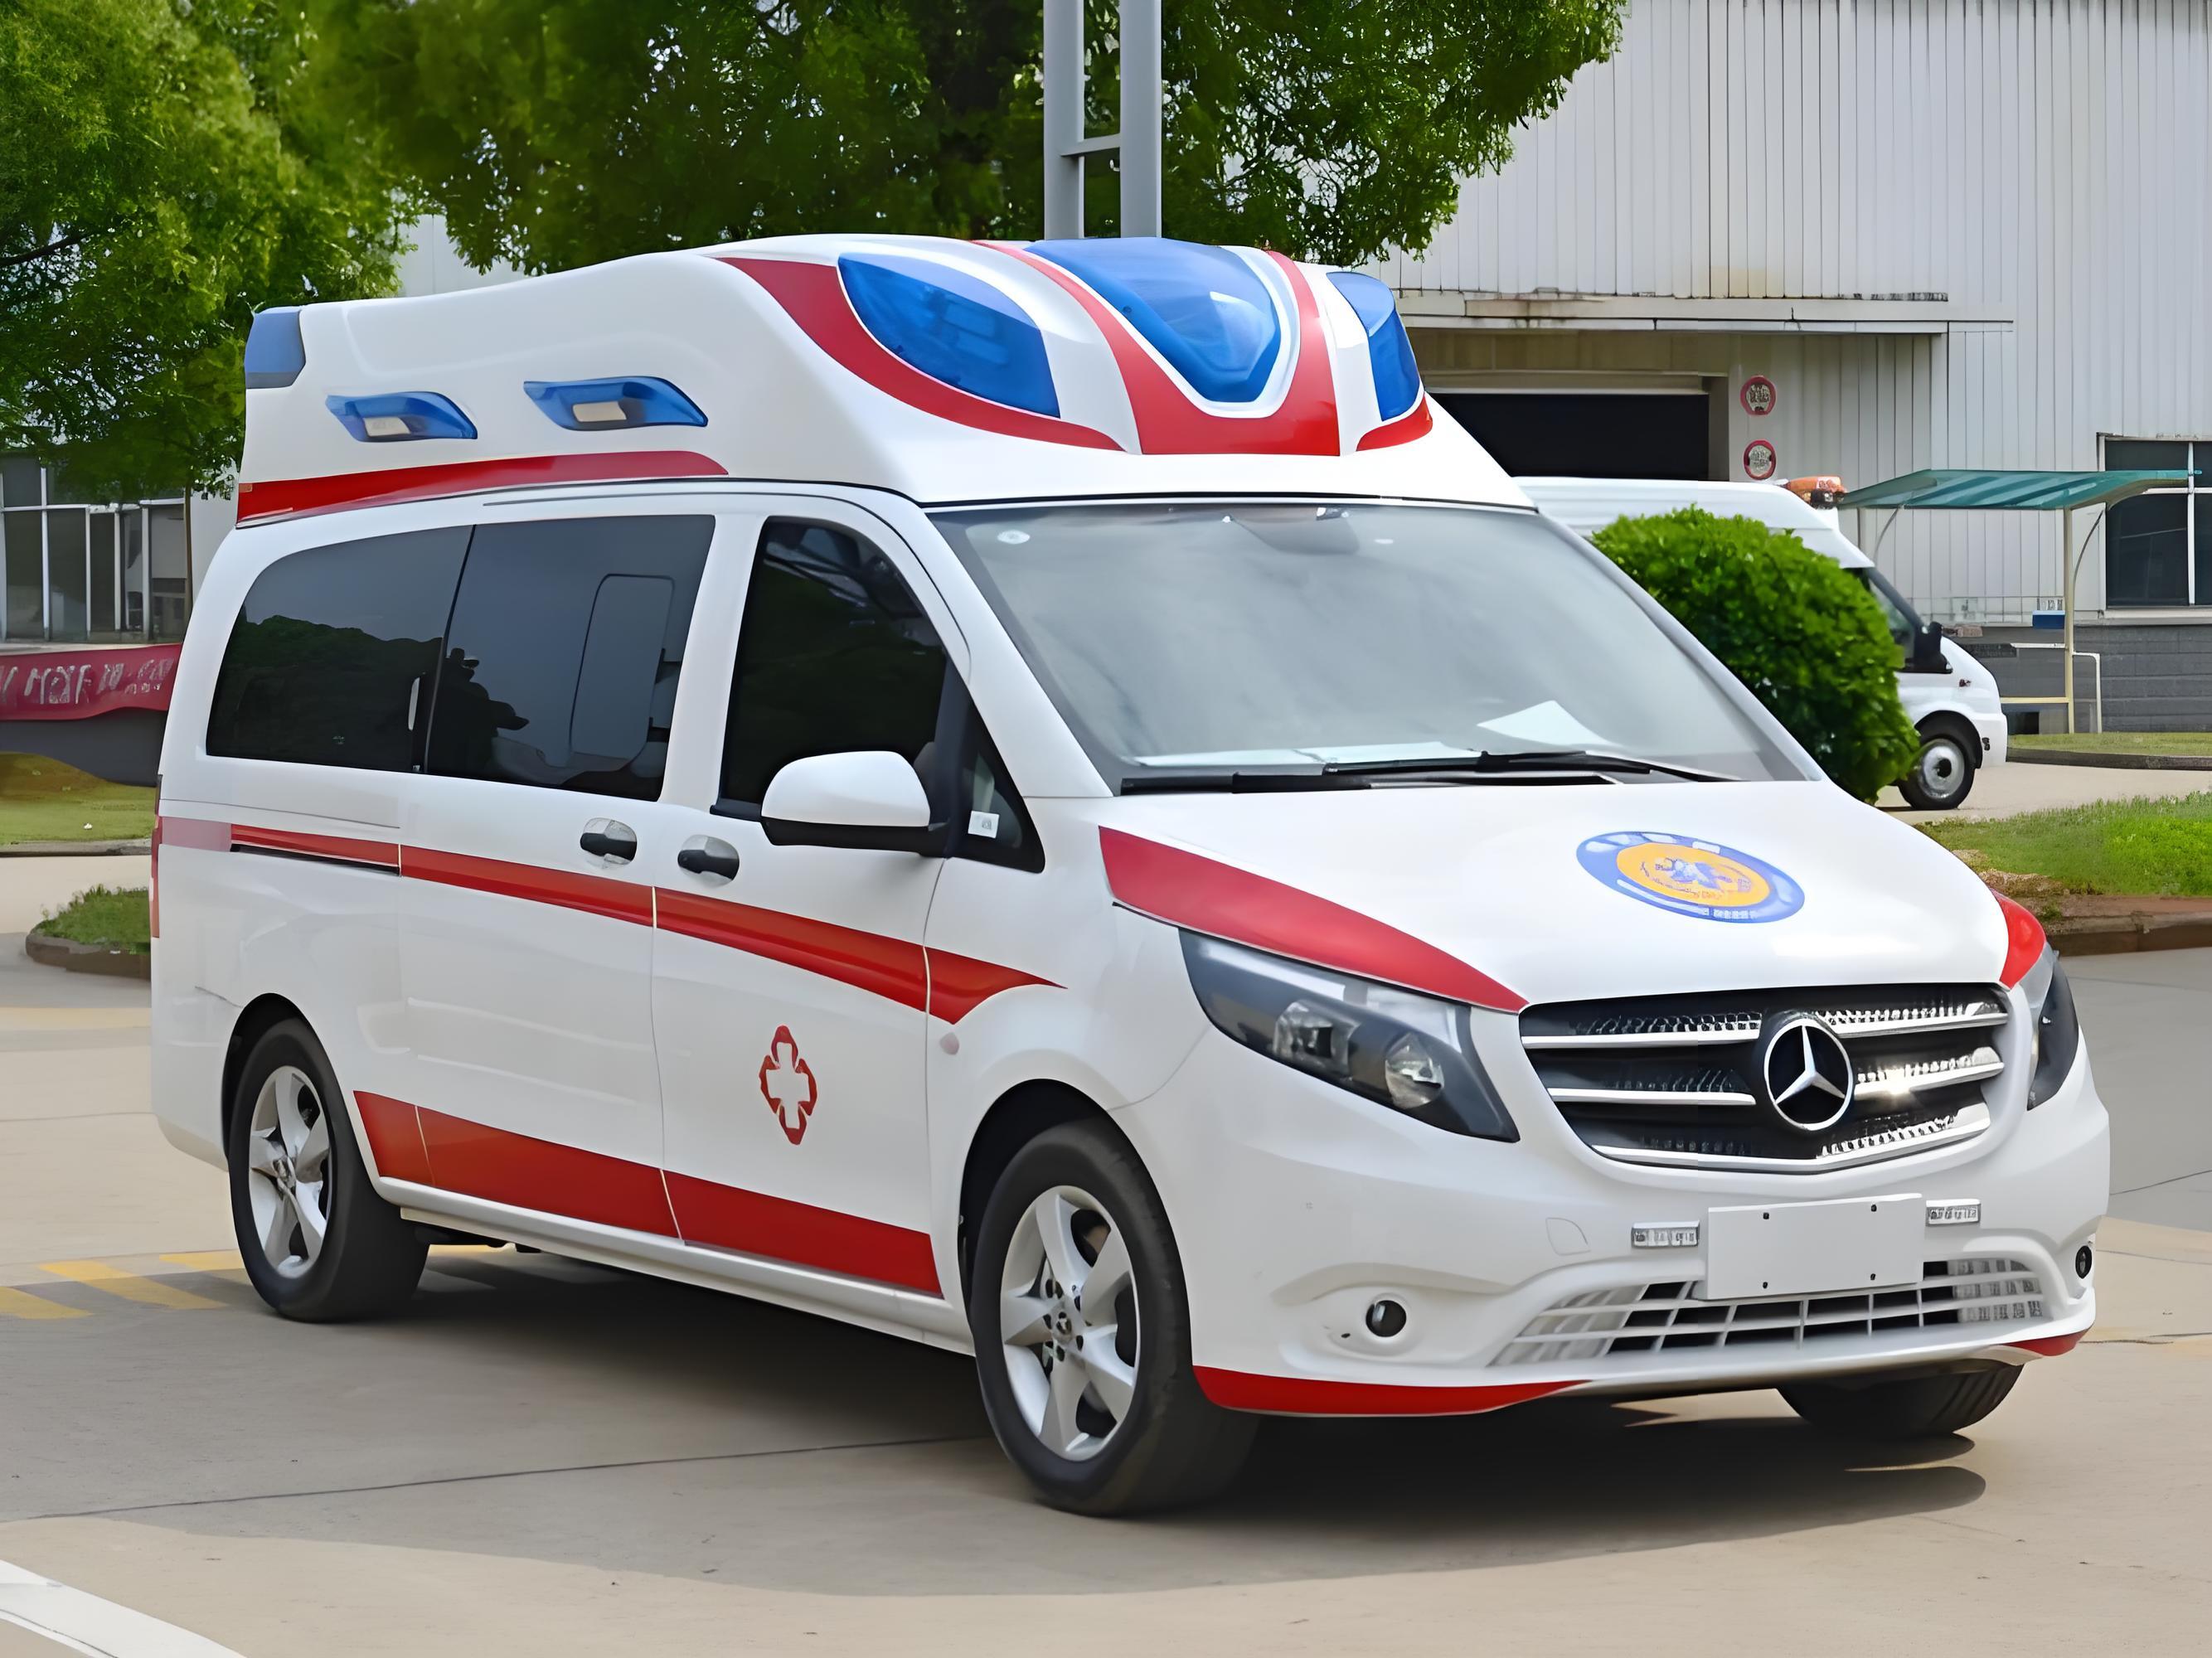 温州长途救护车出租-患者护送服务-五洲救护服务中心